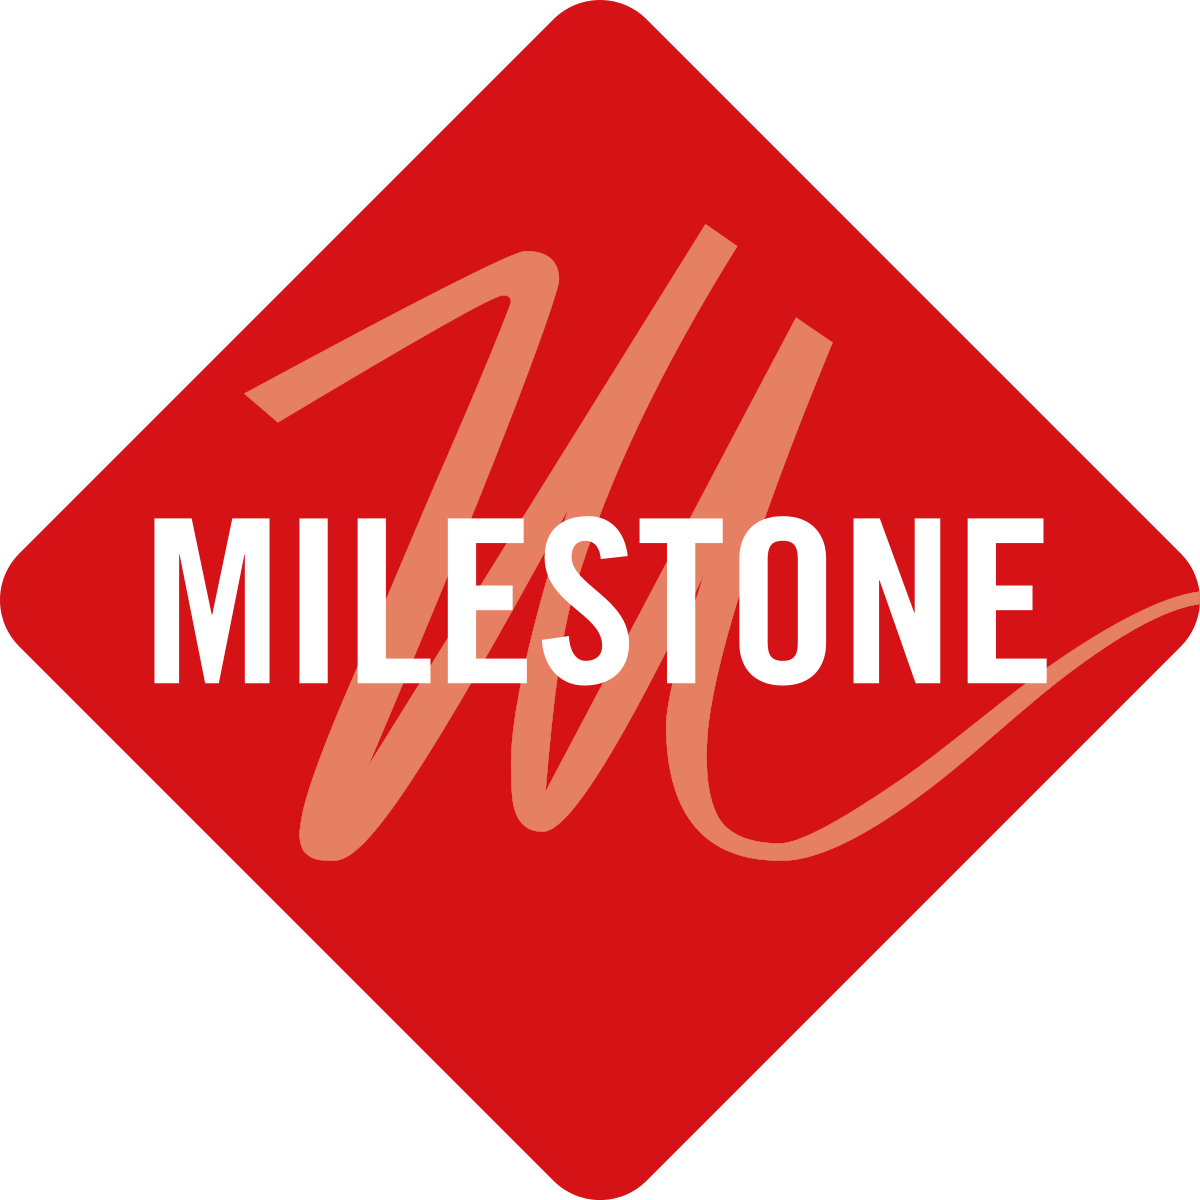 Milestone’s